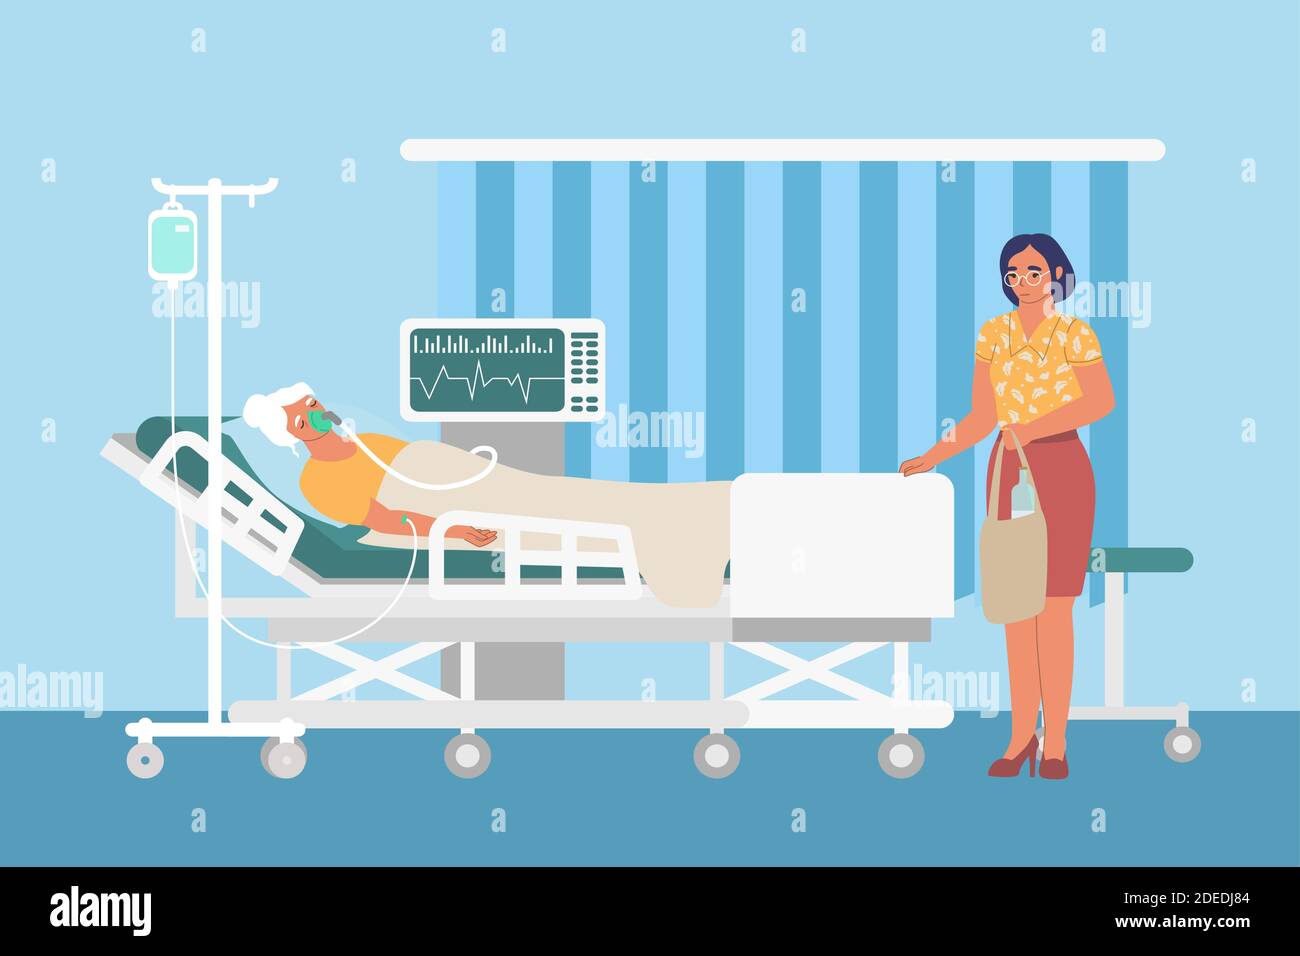 Salle médicale de réanimation avec perfusion, ventilateur, femme triste et patient dans le lit d'hôpital, illustration vectorielle plate. Illustration de Vecteur